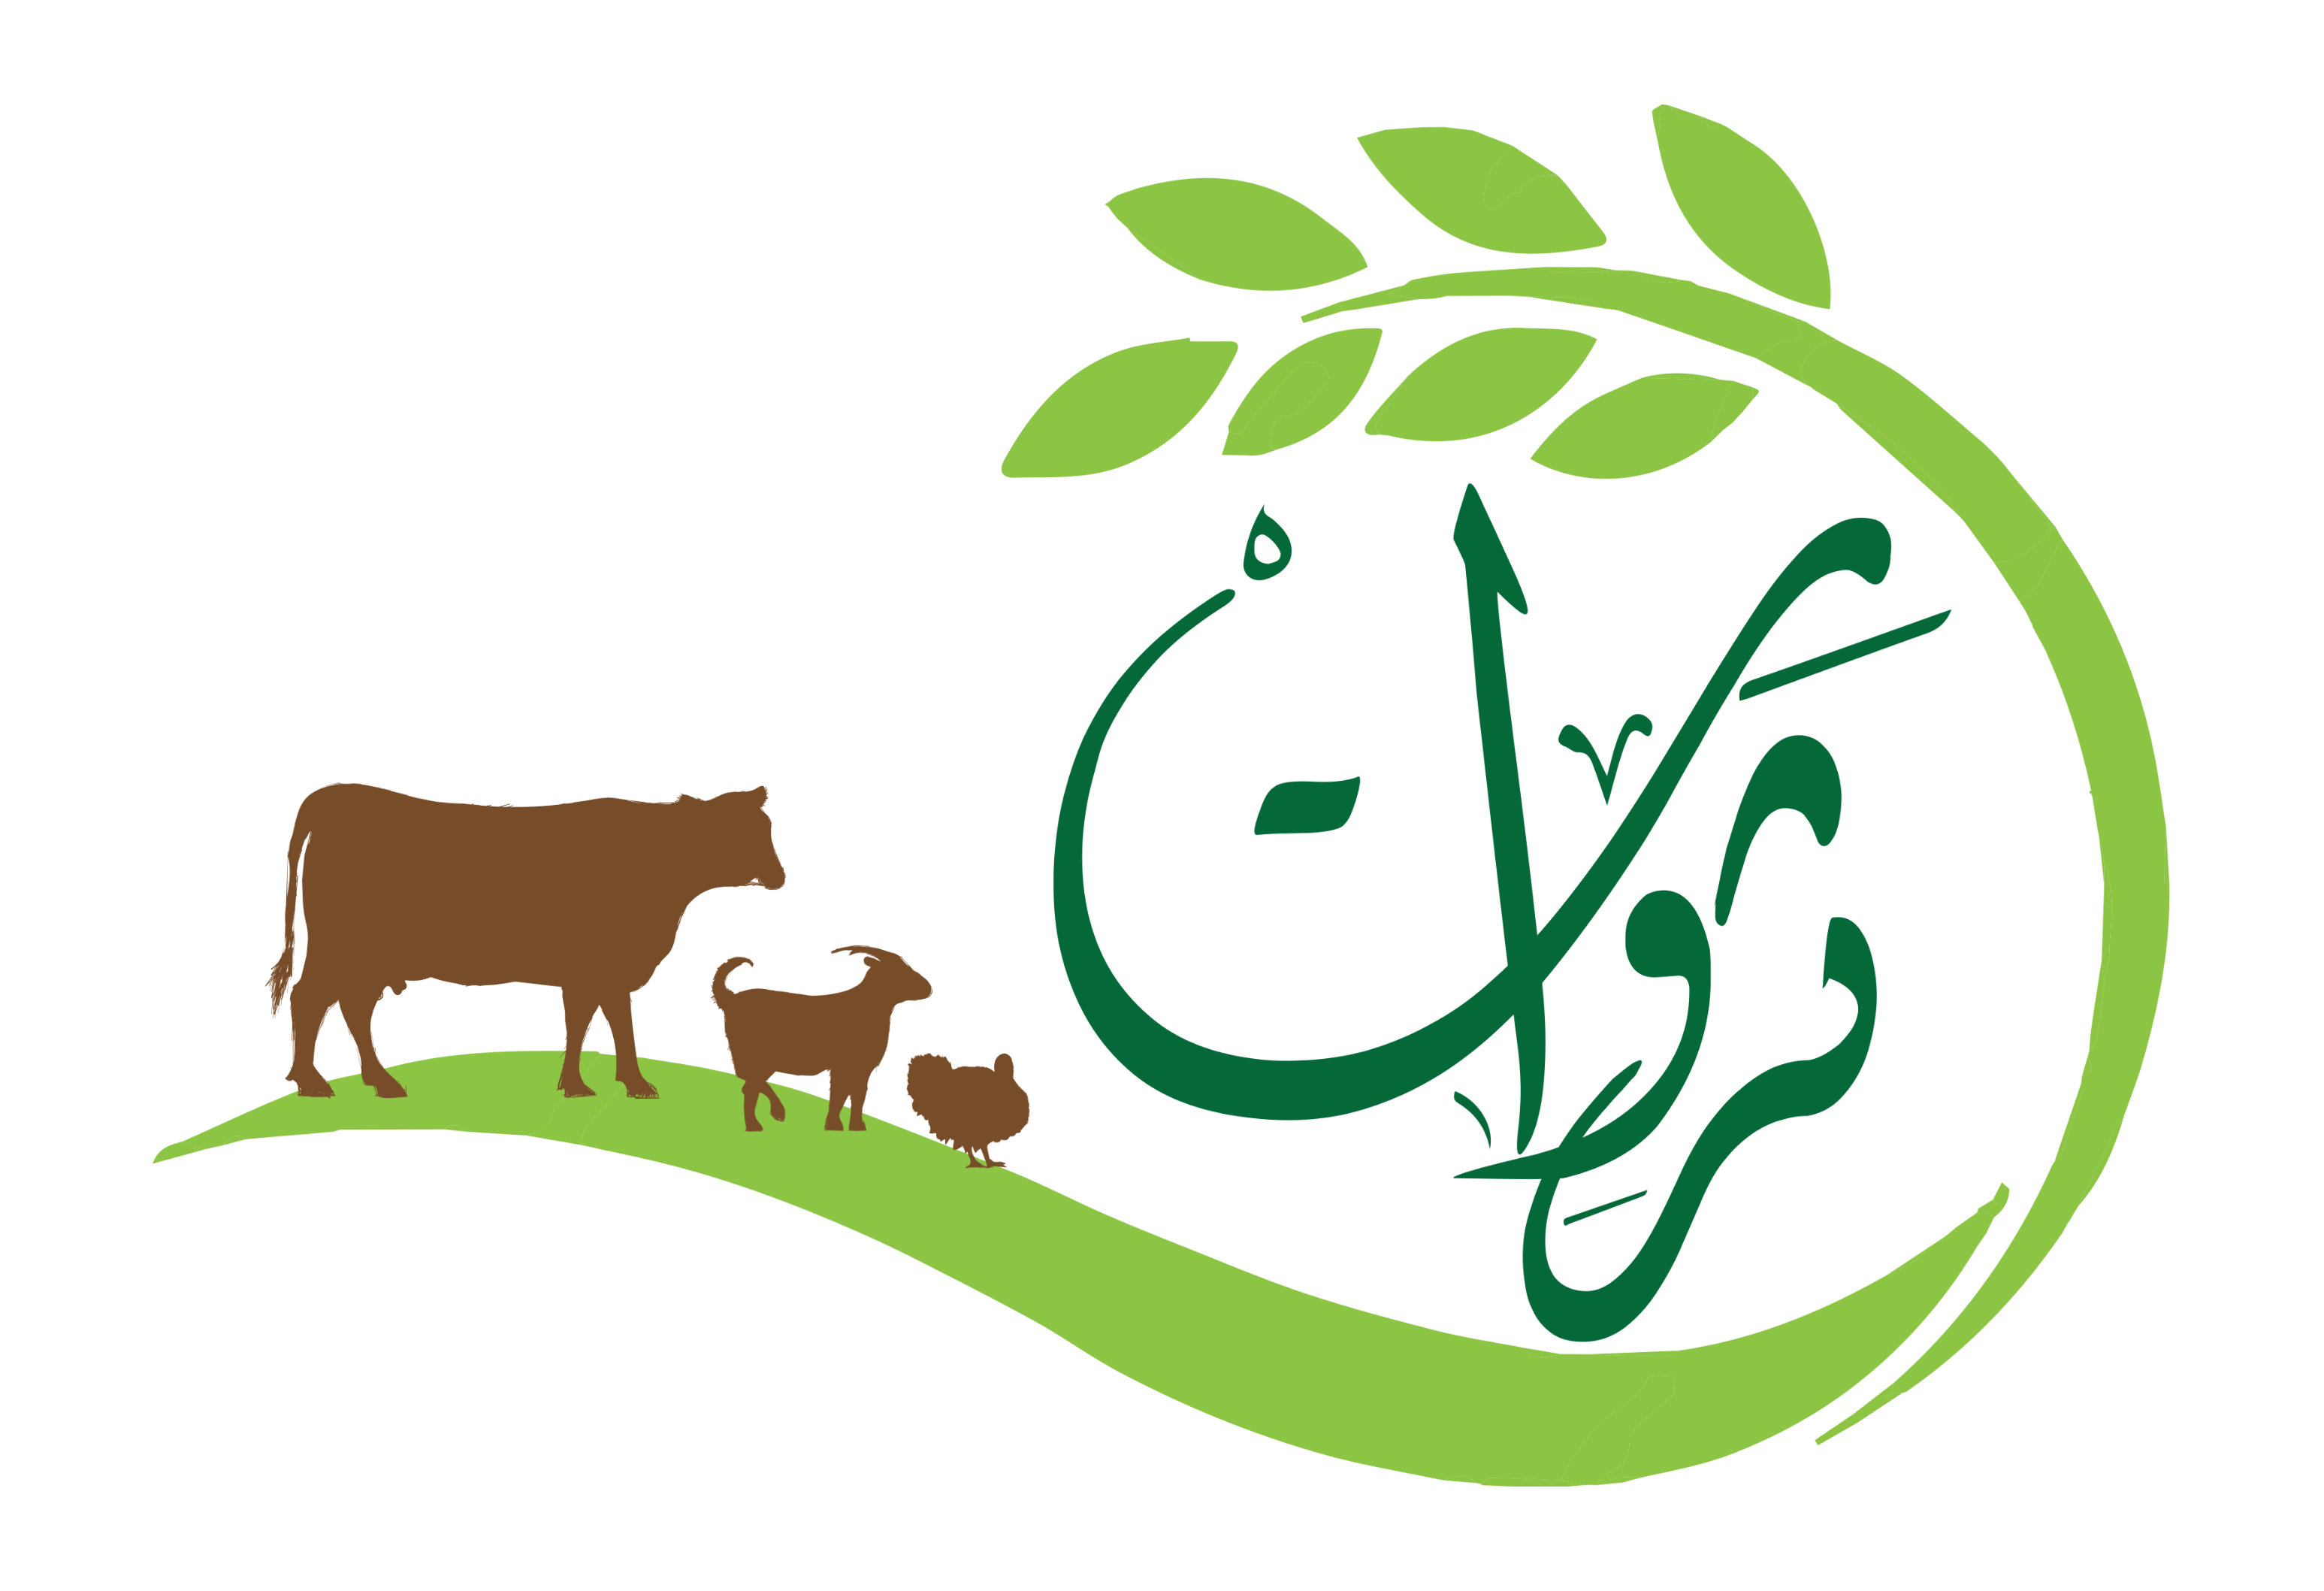 ثروات - :: منصة الثروة الزراعية و الحيوانية بسلطنة عمان ::